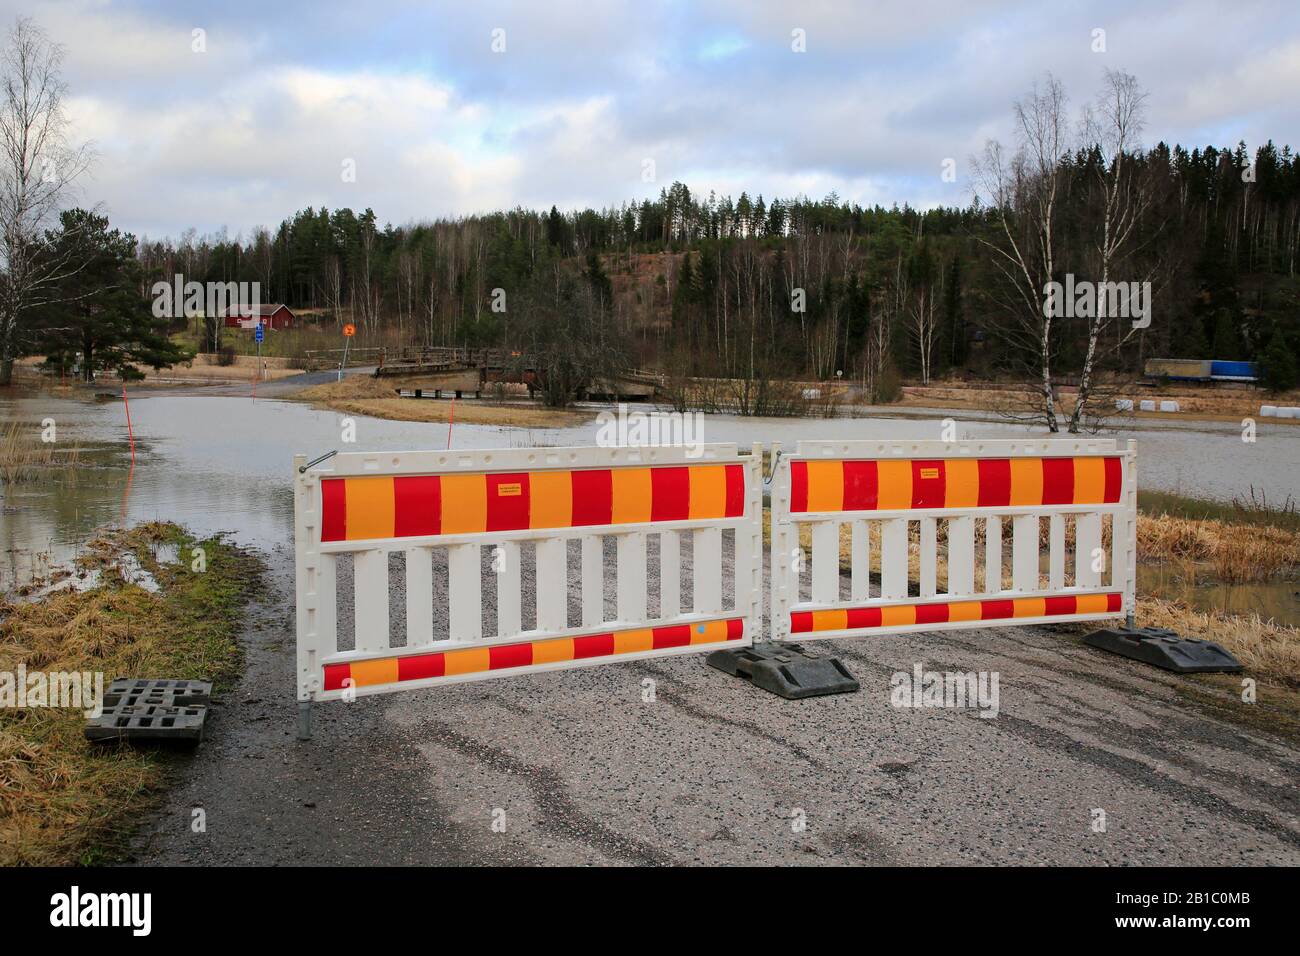 Byroute au large de la Highway 52 fermée en raison de l'inondation de la rivière Perniönjoki en février 2020. Perniö, Salo, Finlande, 23 Février 2020. Banque D'Images